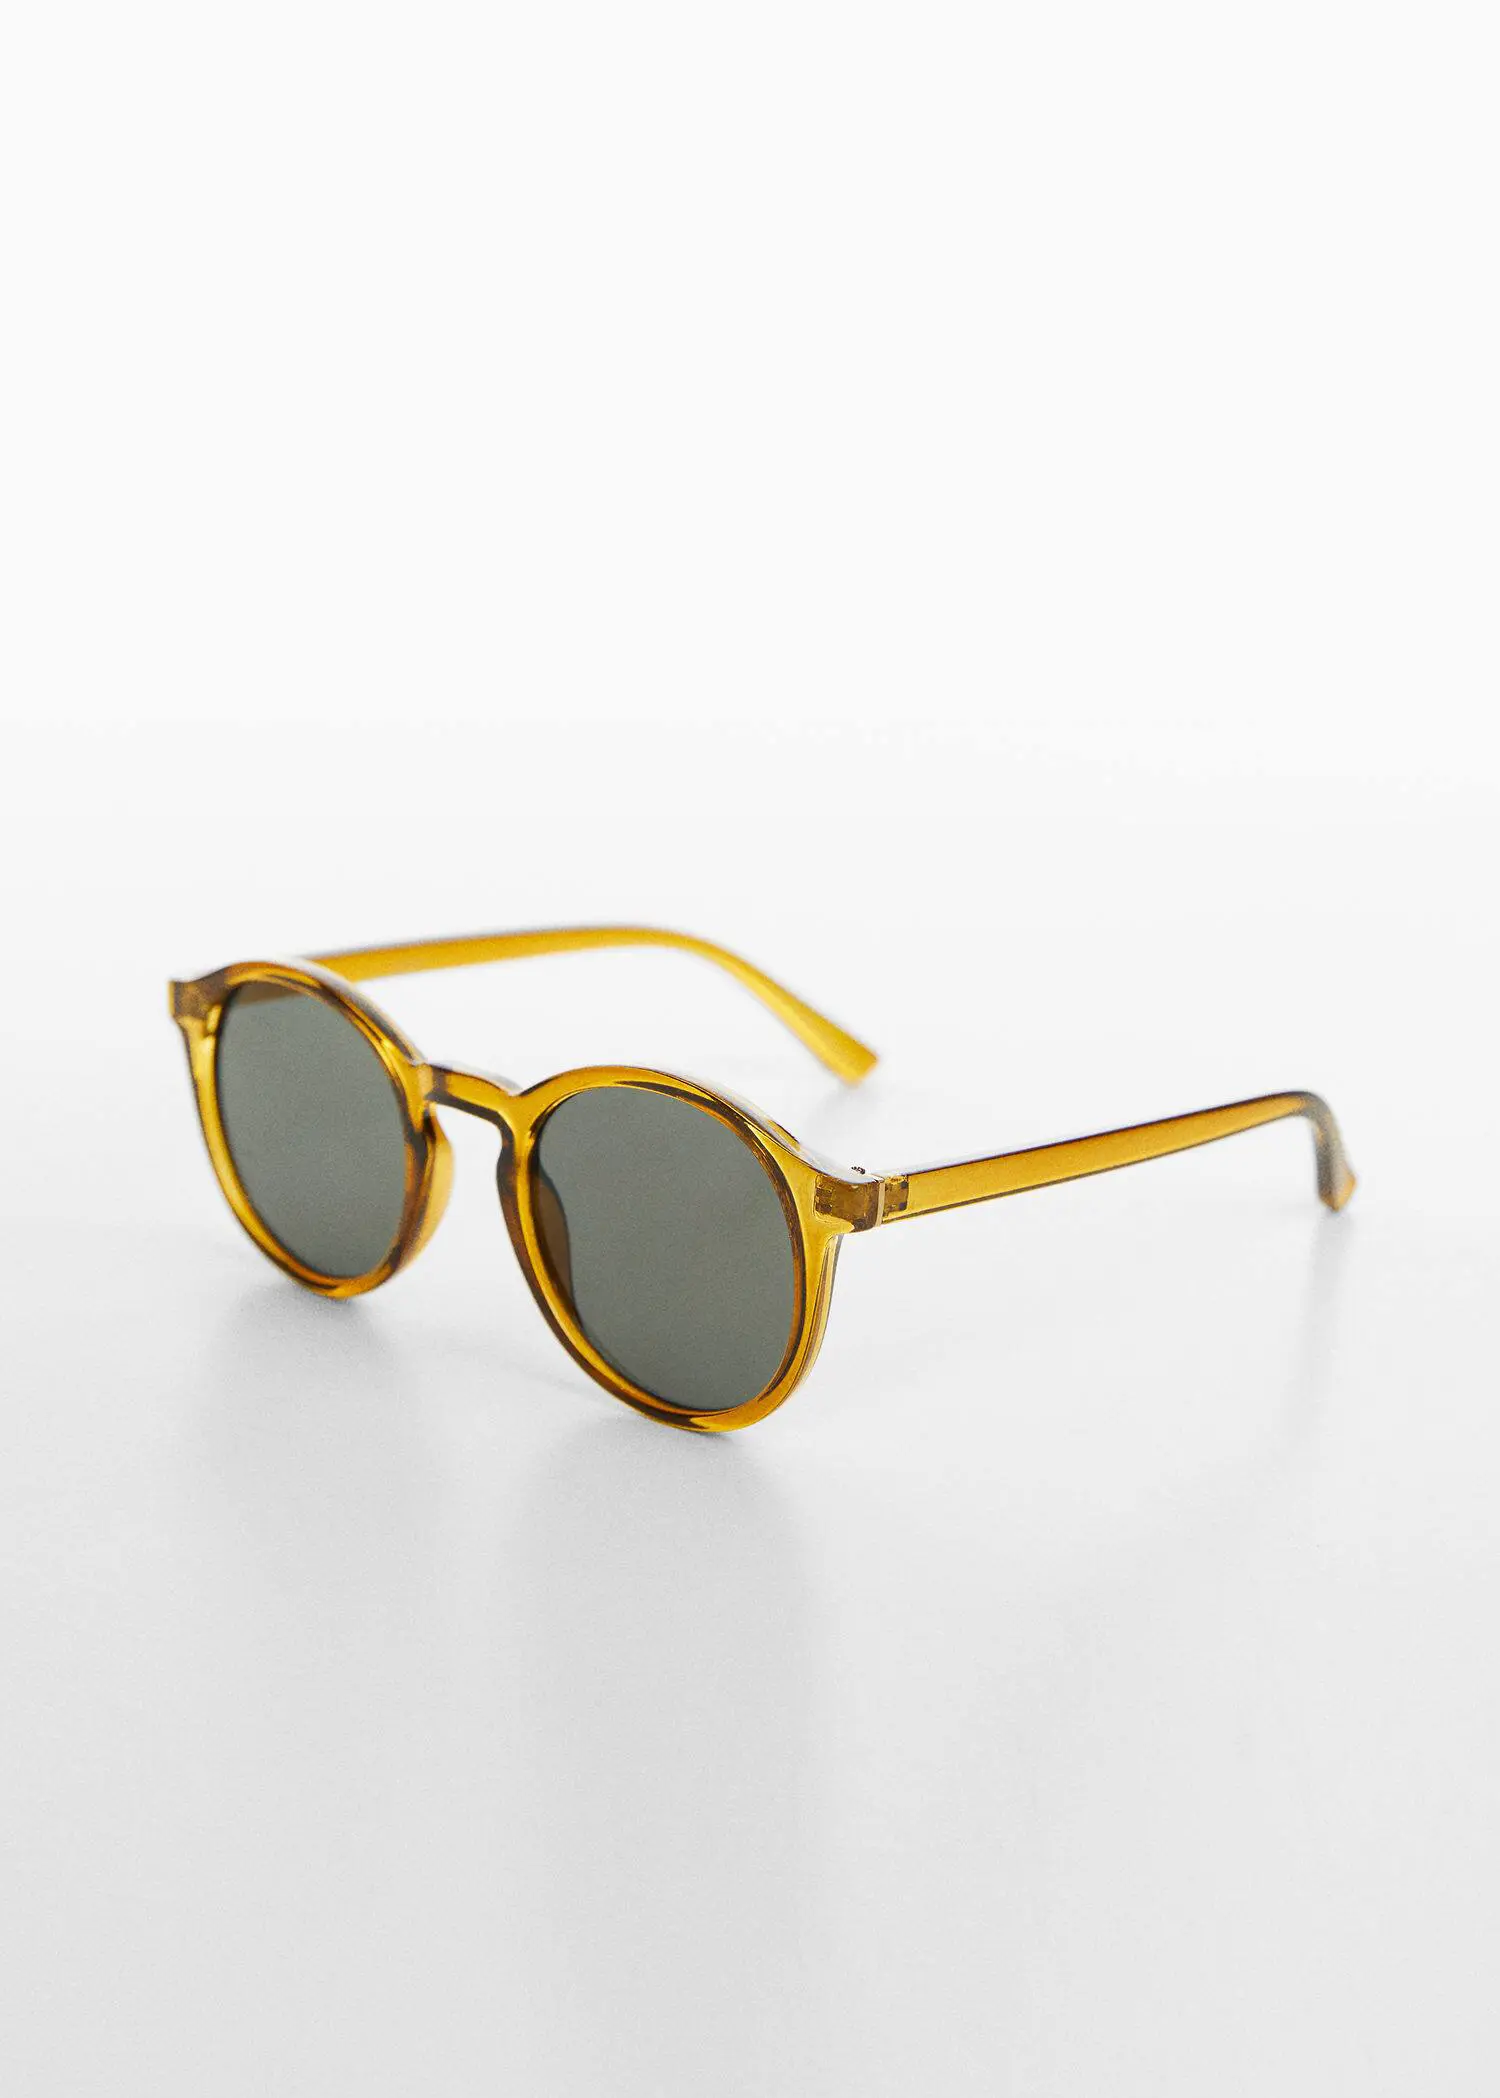 Mango Polarised sunglasses. 2